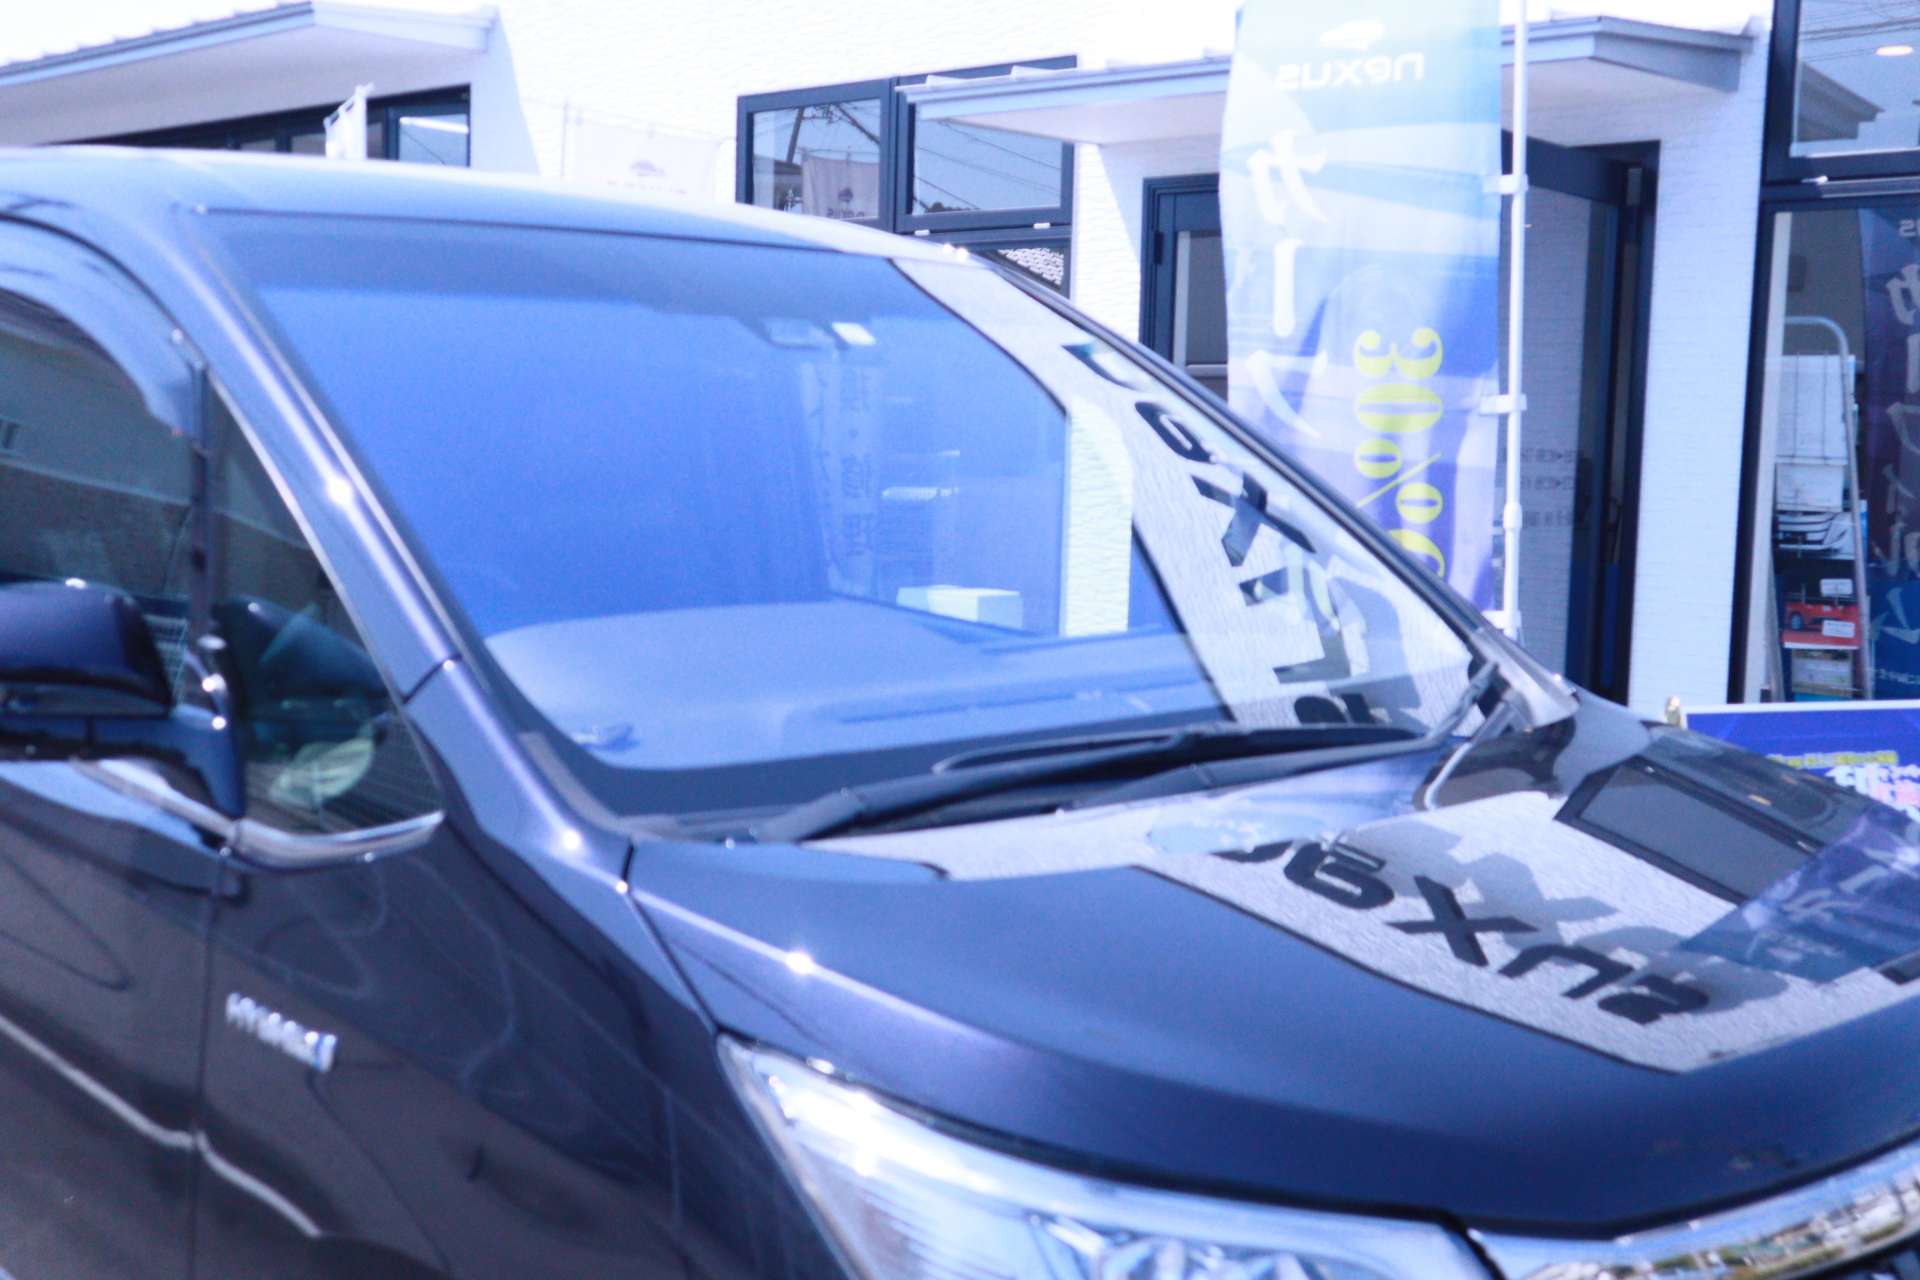 エスクァイア フロントガラスコートテクト交換 Nexus株式会社 地元岡山市からお車を愛する方に向けて様々な情報を発信するブログを運営中